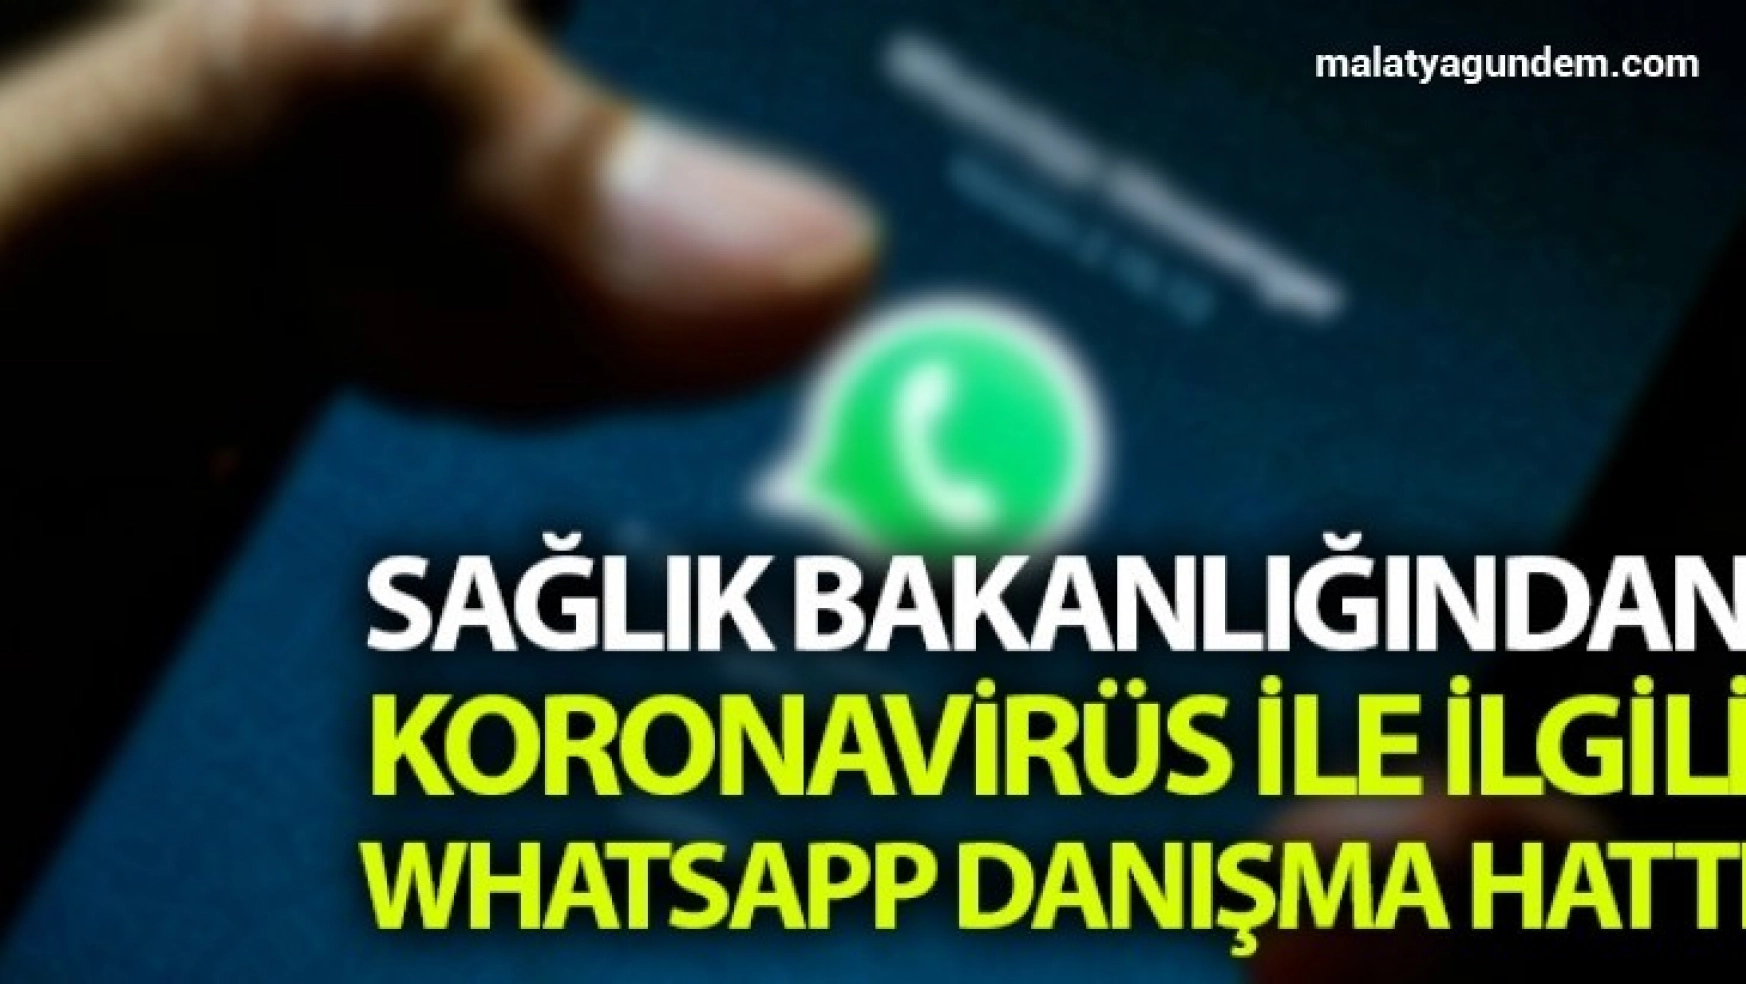 Sağlık Bakanlığından korona virüsle ilgili 184 Whatsapp danışma hattı